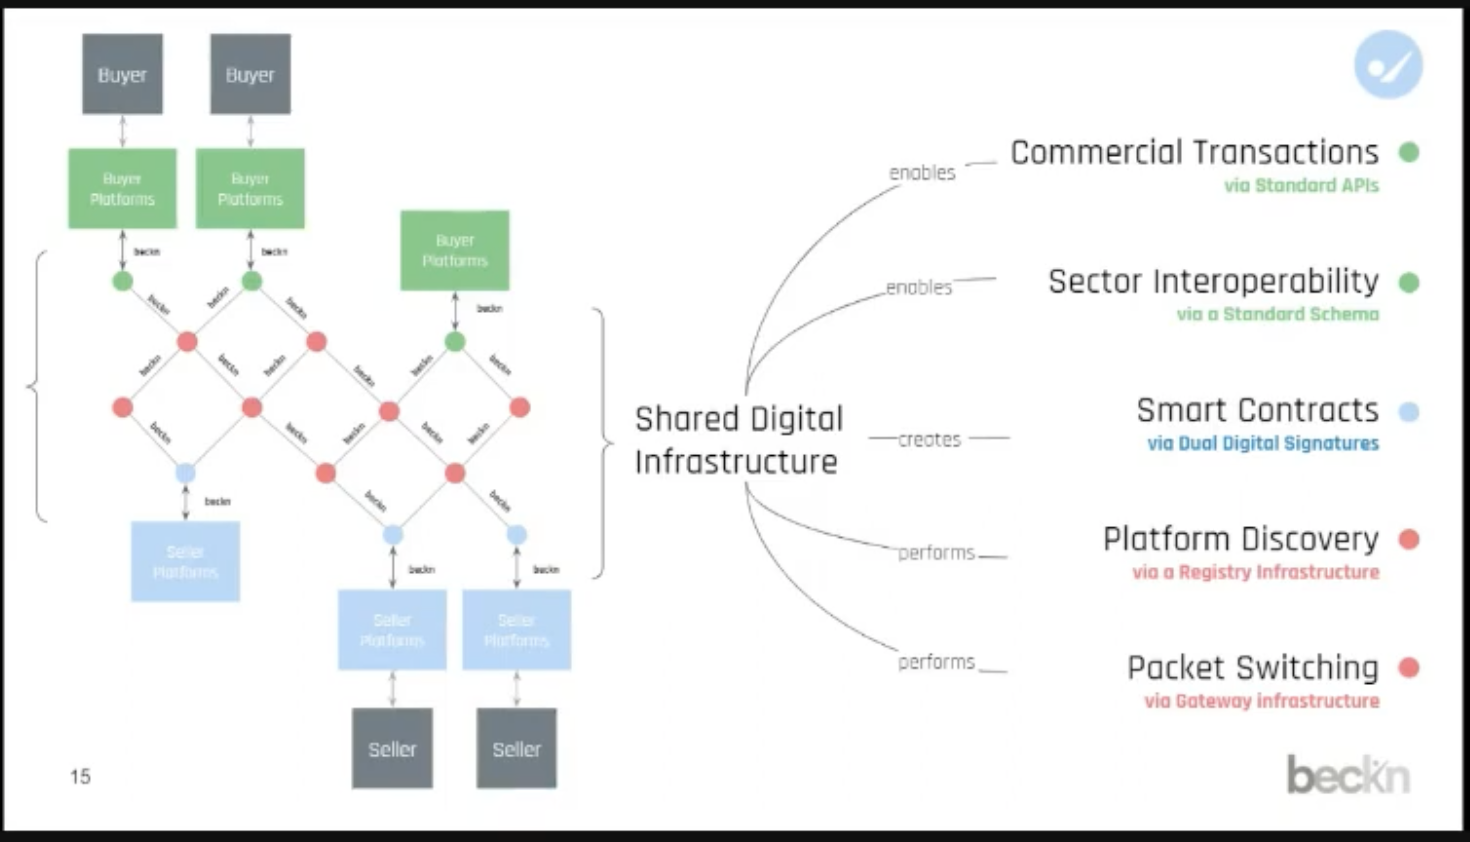 Beckn creates shared digital infrastructure